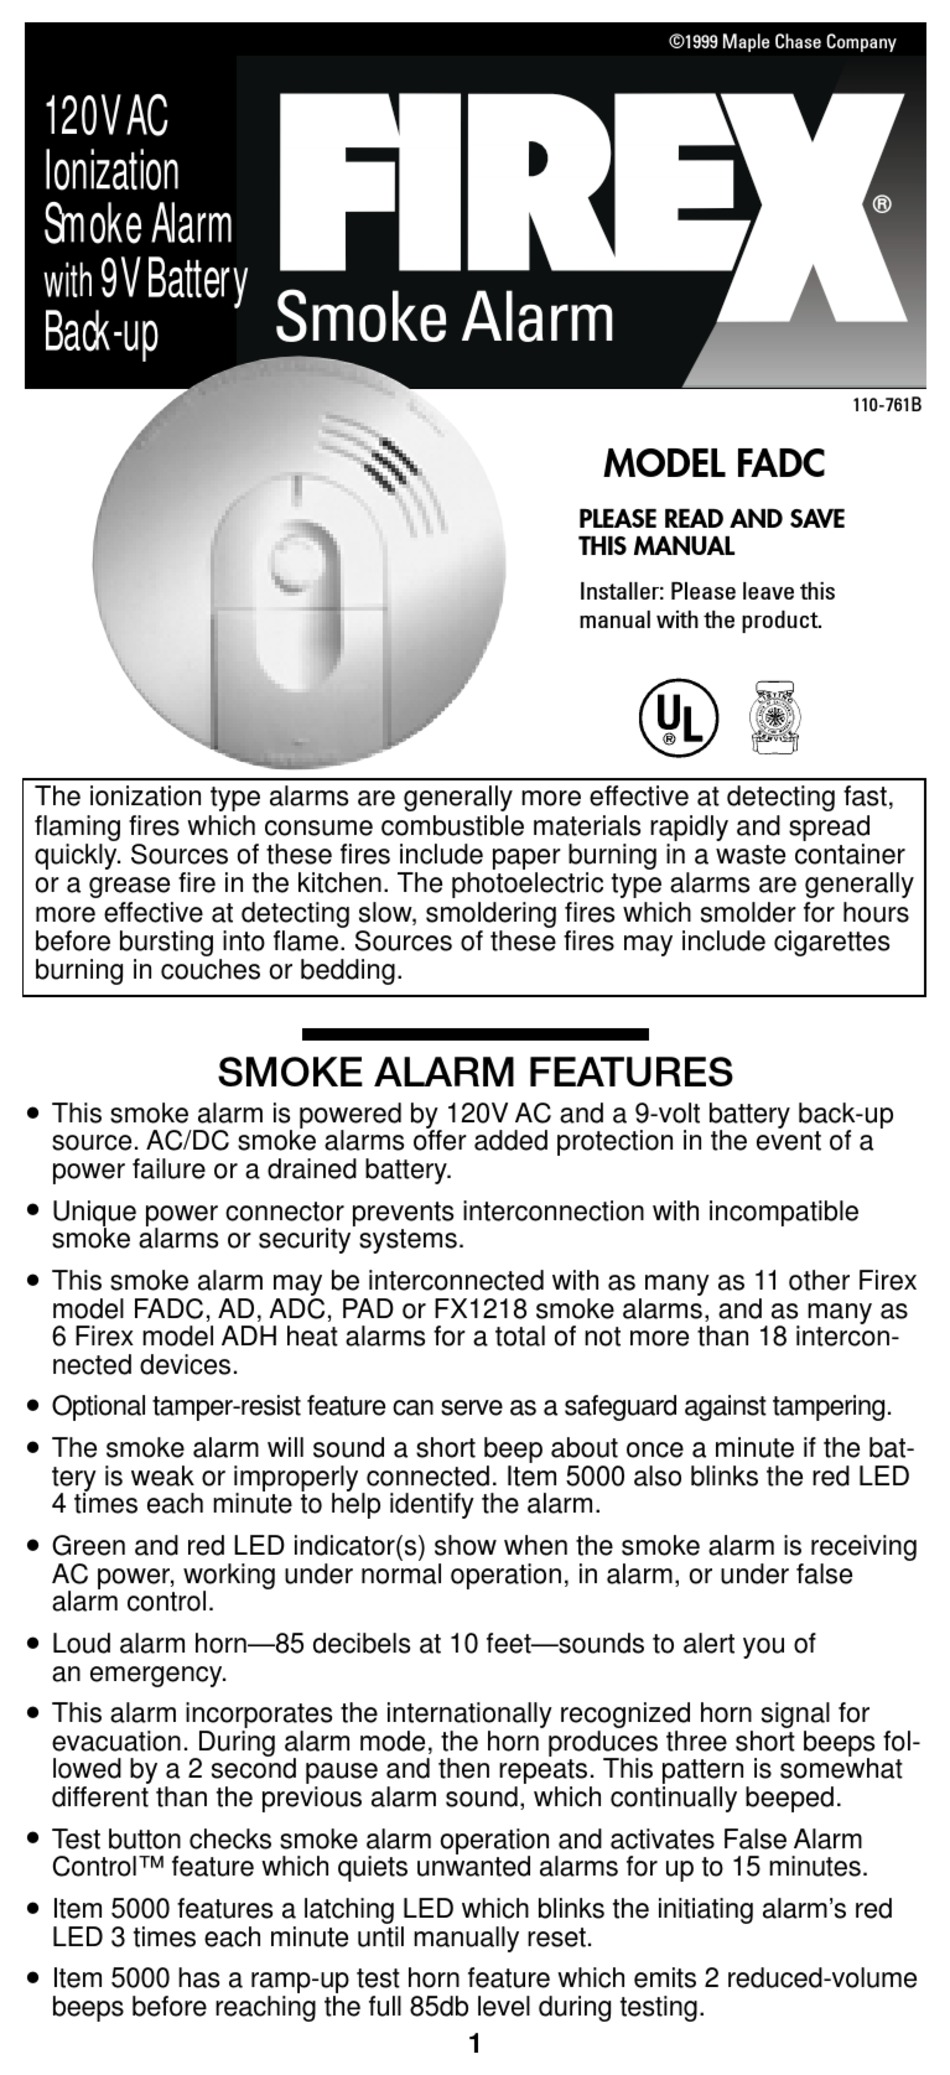 download firex smoke alarm flashing red